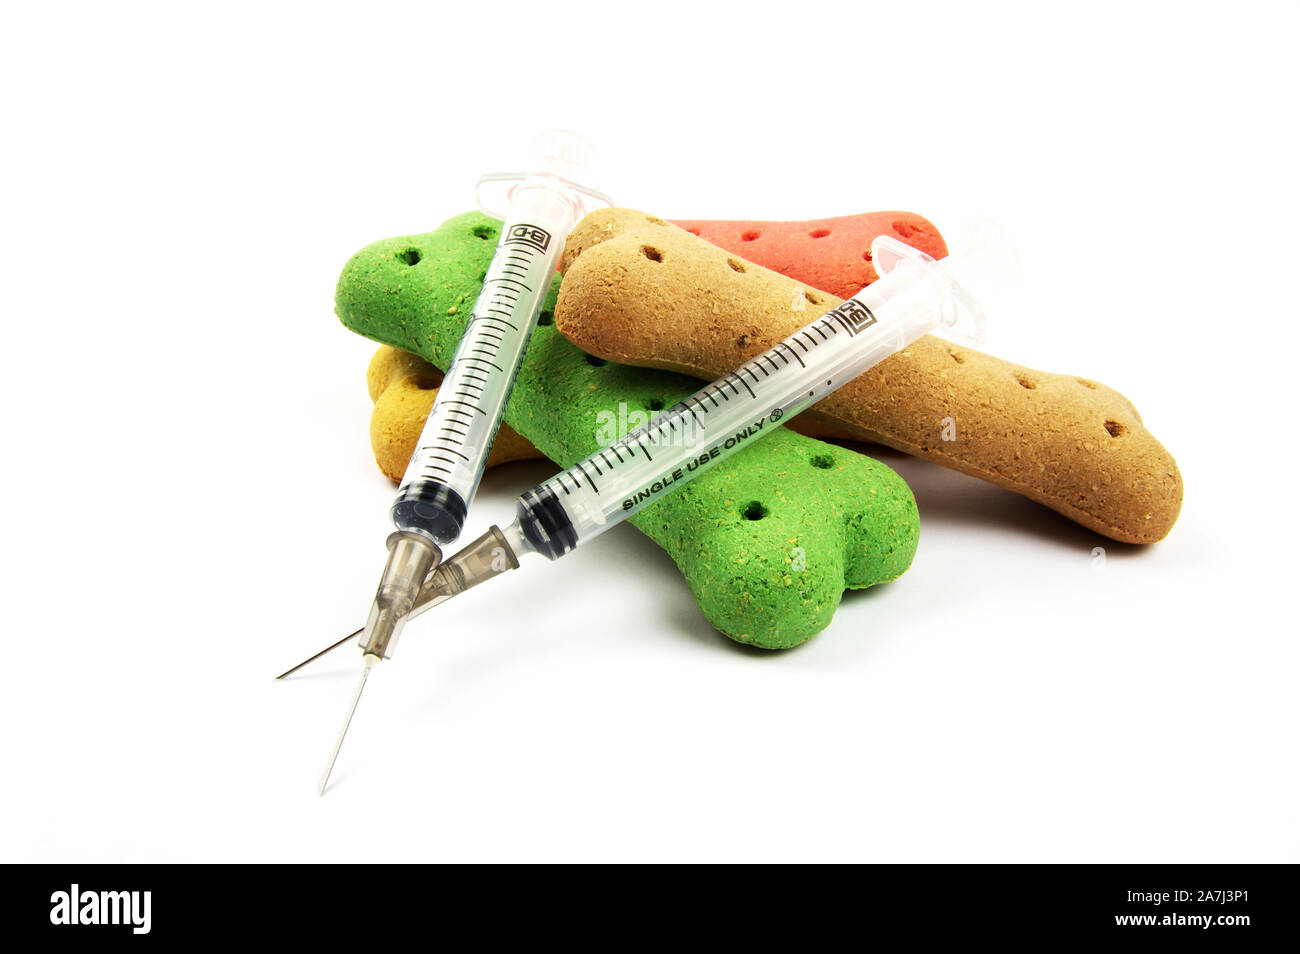 pet medical syringes and dog treat bones on a white background Stock Photo